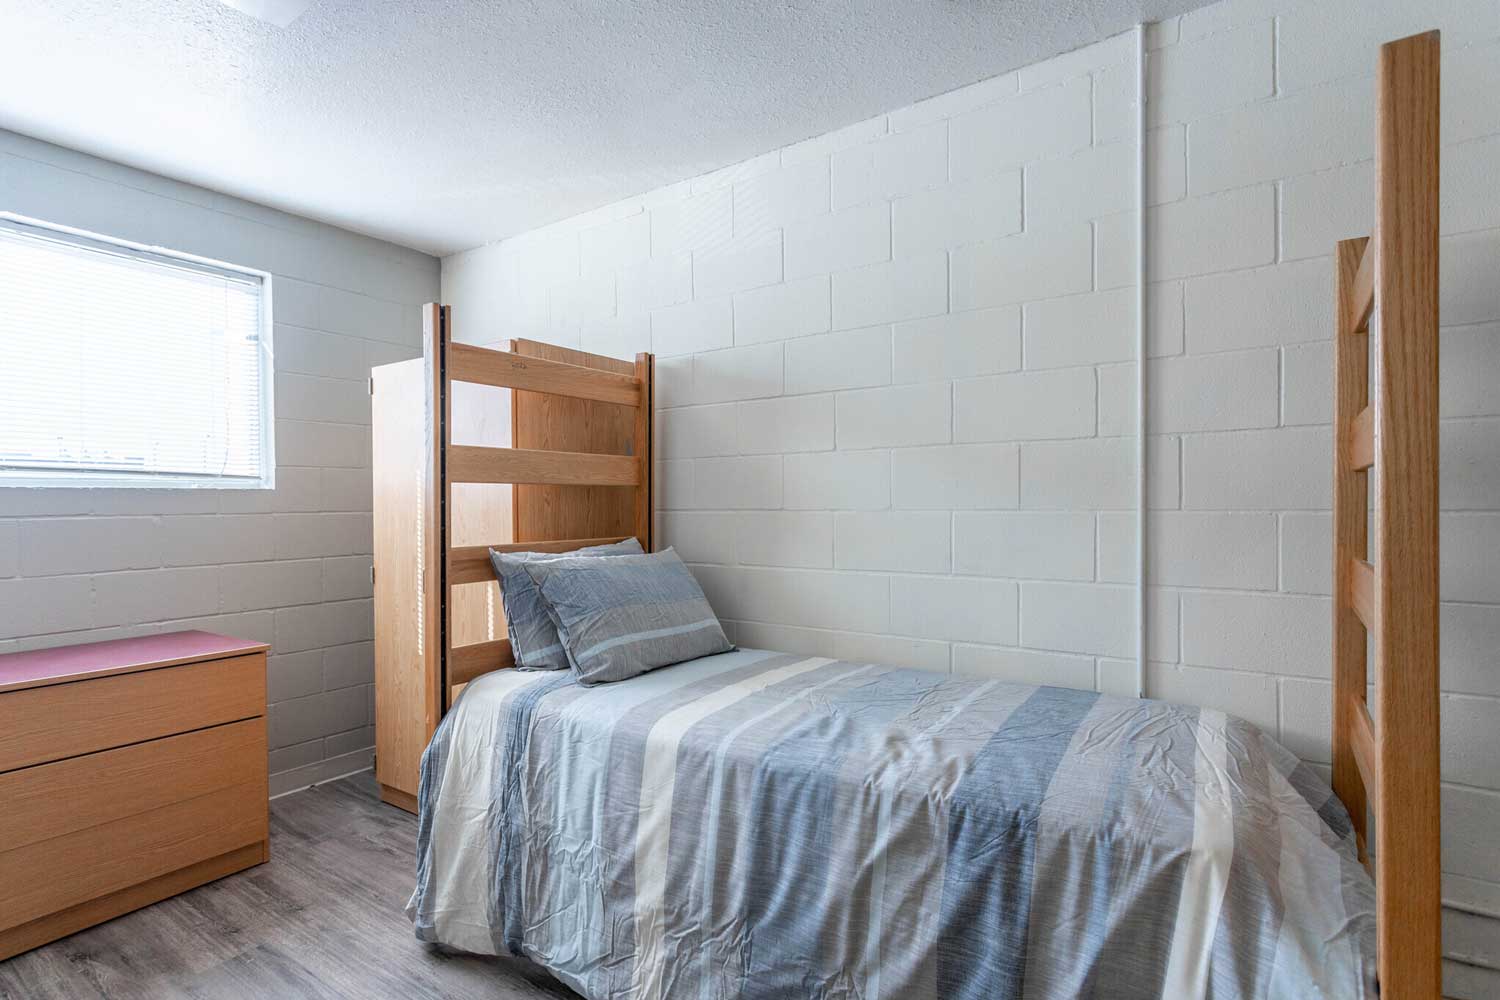 Bedroom Interior at Pelican Shores Apartments in Galveston, Texas